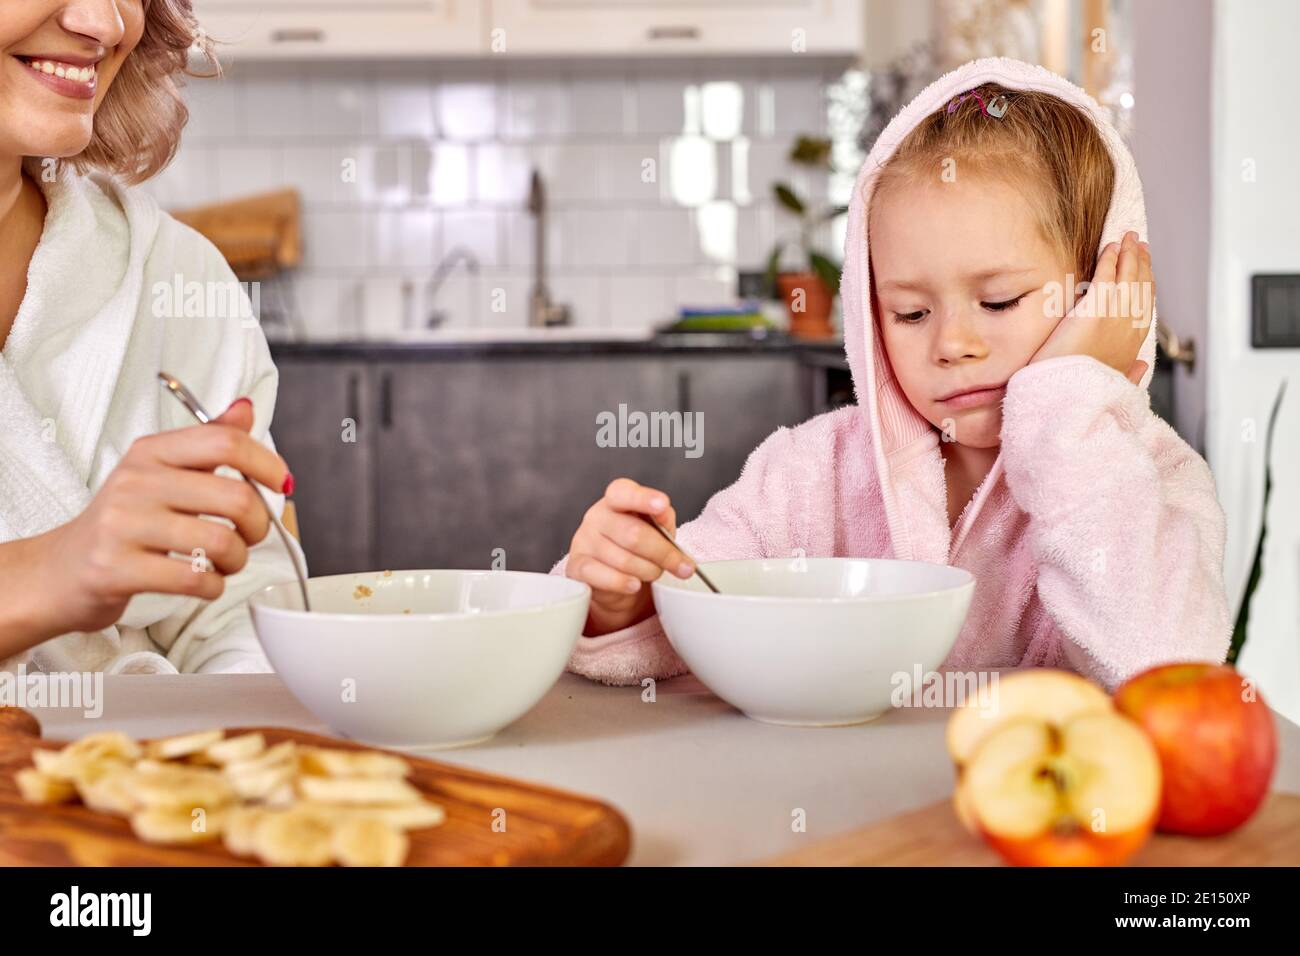 l'enfant fille ne veut pas manger le petit déjeuner, s'asseoir derrière la  table veulent dormir, dans la cuisine moderne claire le matin Photo Stock -  Alamy